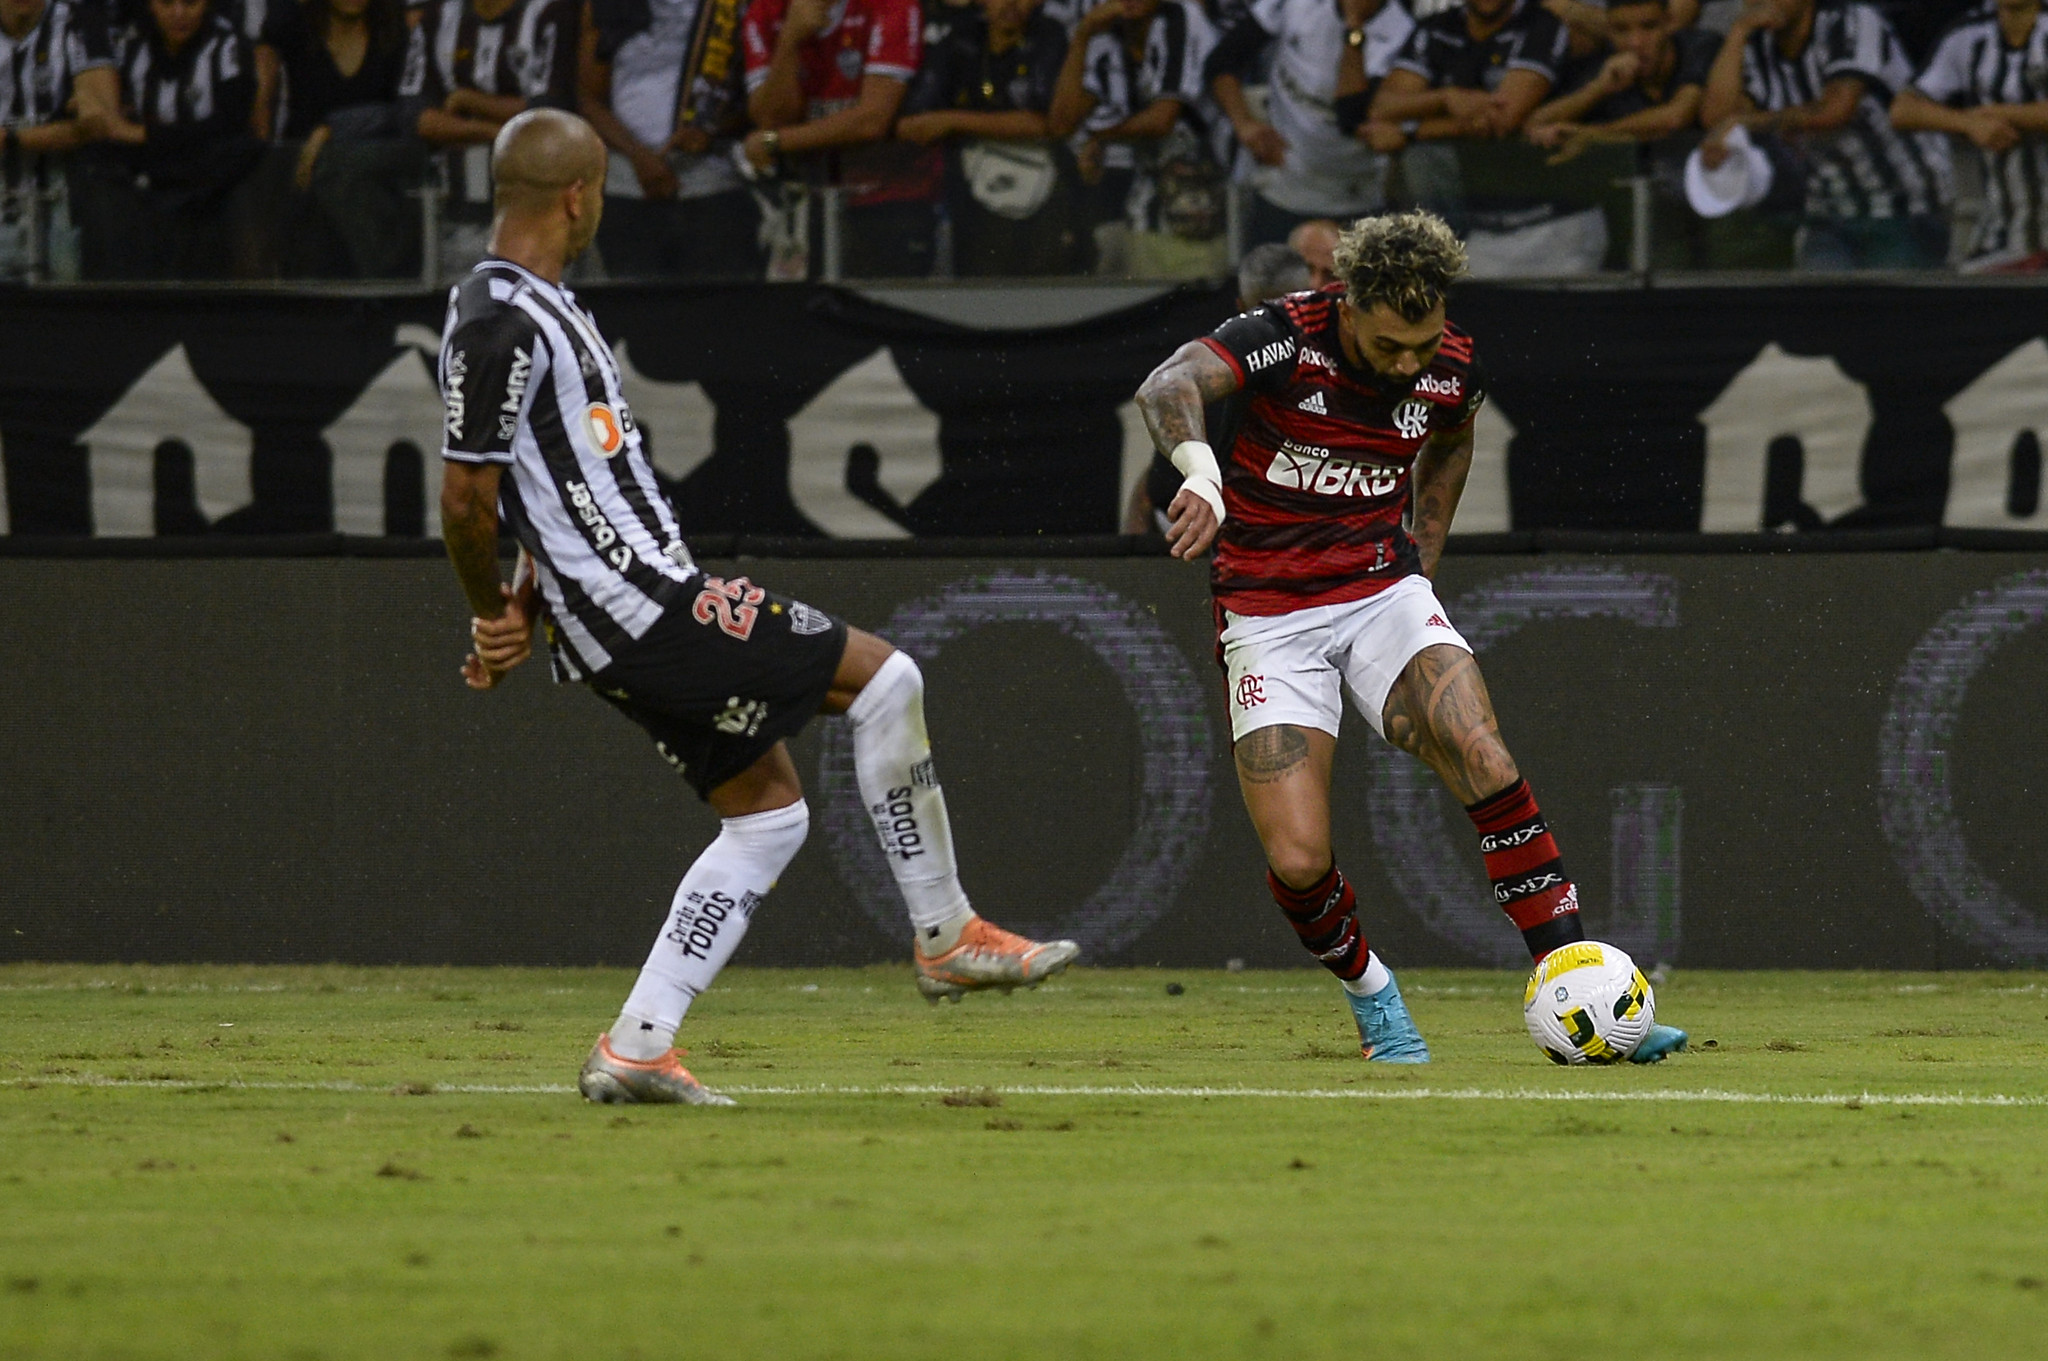 Atacante do Flamengo avaliou desempenho do time na derrota por 2 a 1 no Mineirão como satisfatório e projetou "pressão" no jogo de volta